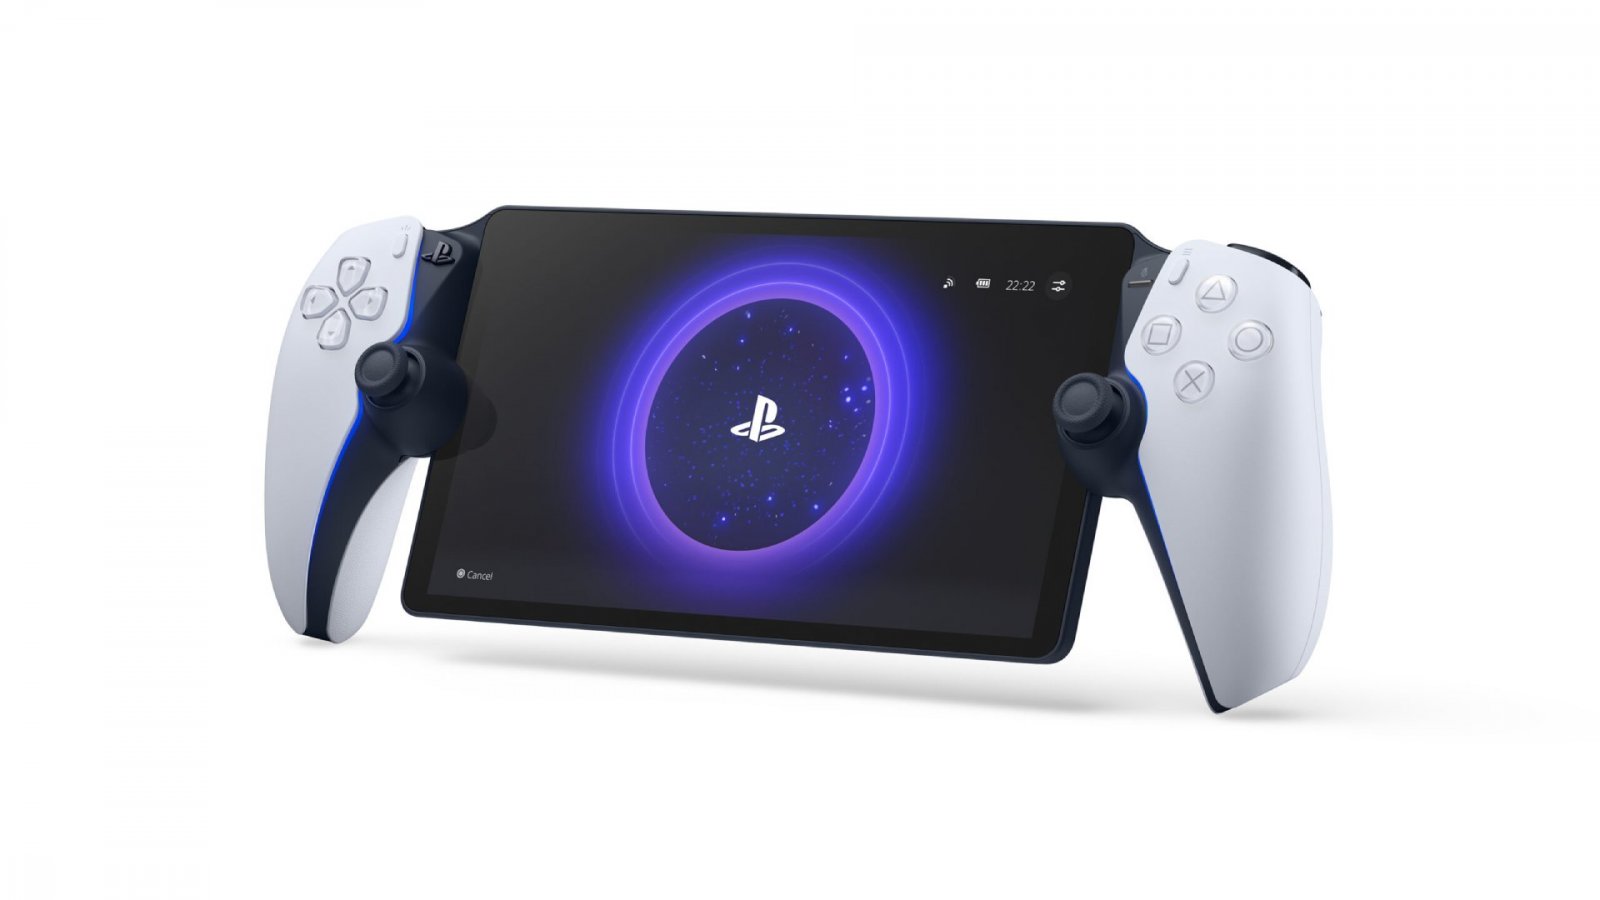 PlayStation Portal sembra essere già sold out in Giappone presso vari rivenditori